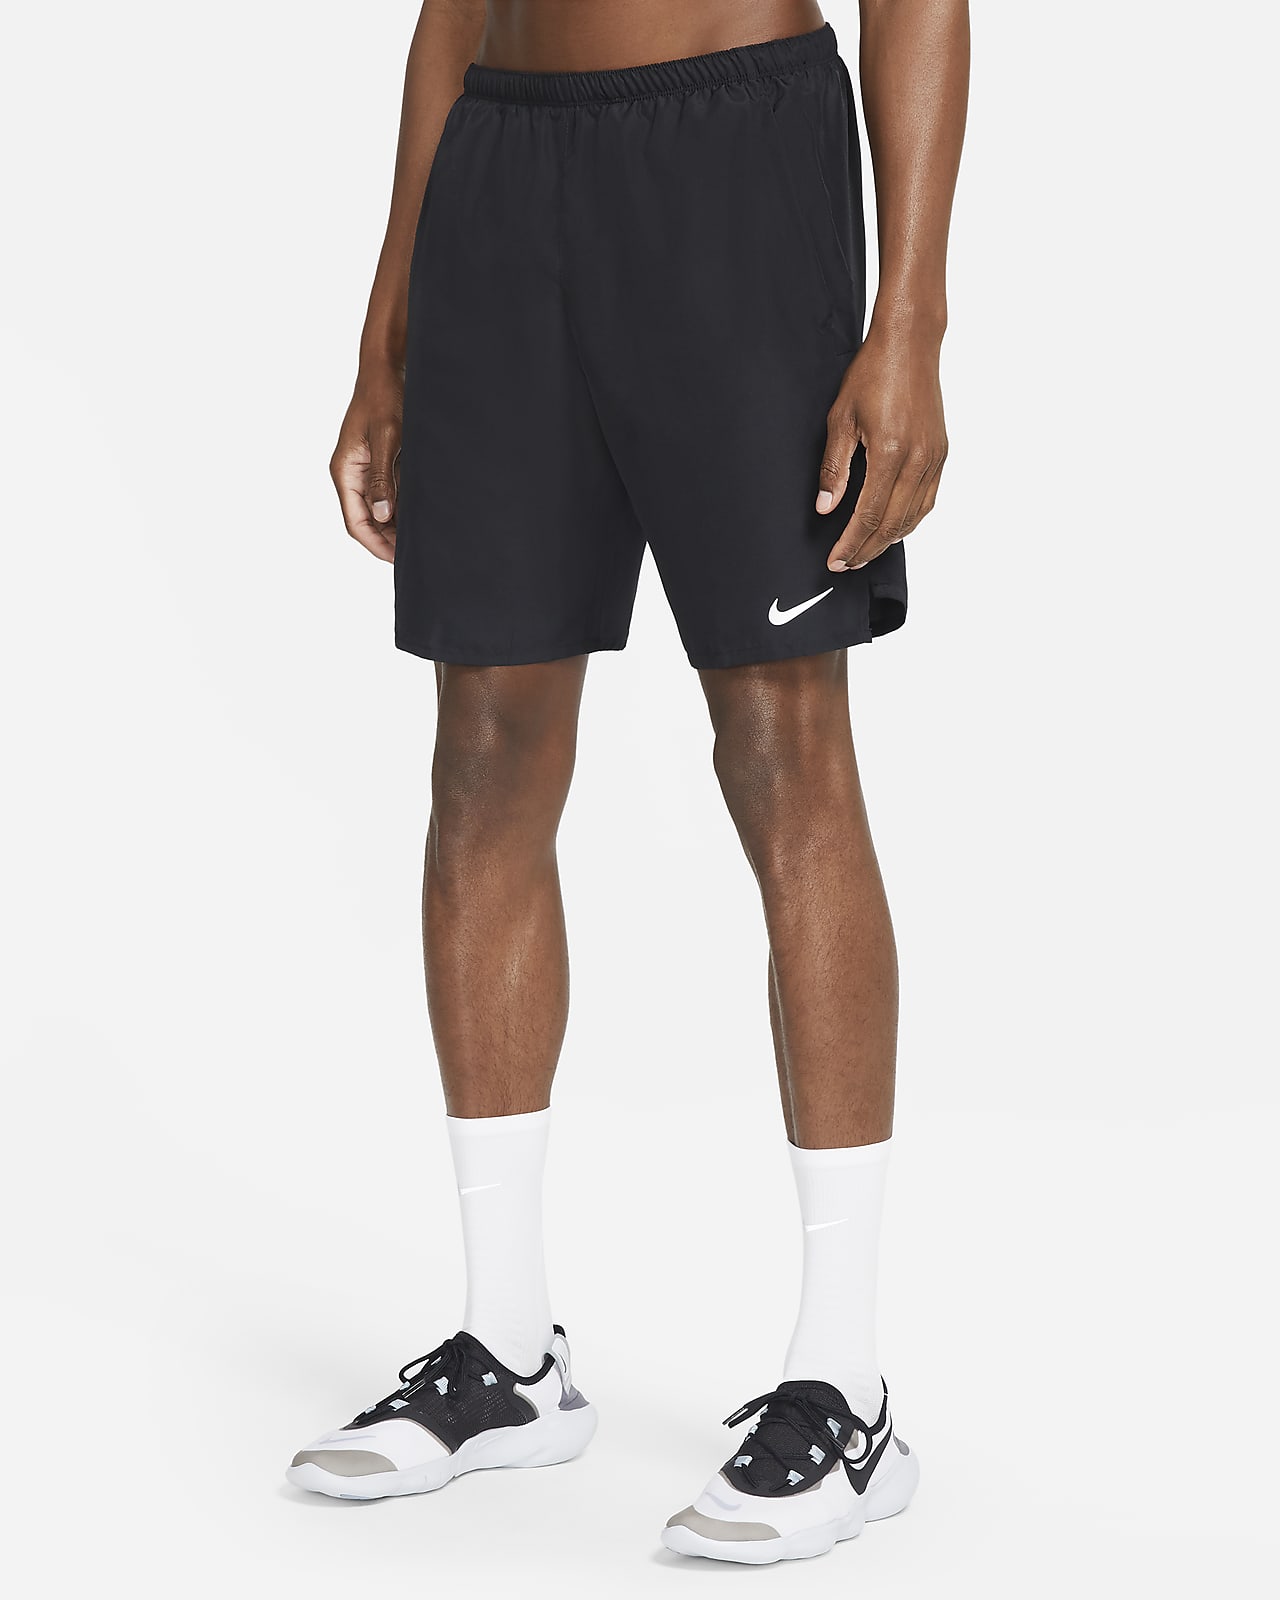 Brief-Lined Running Shorts. Nike SA